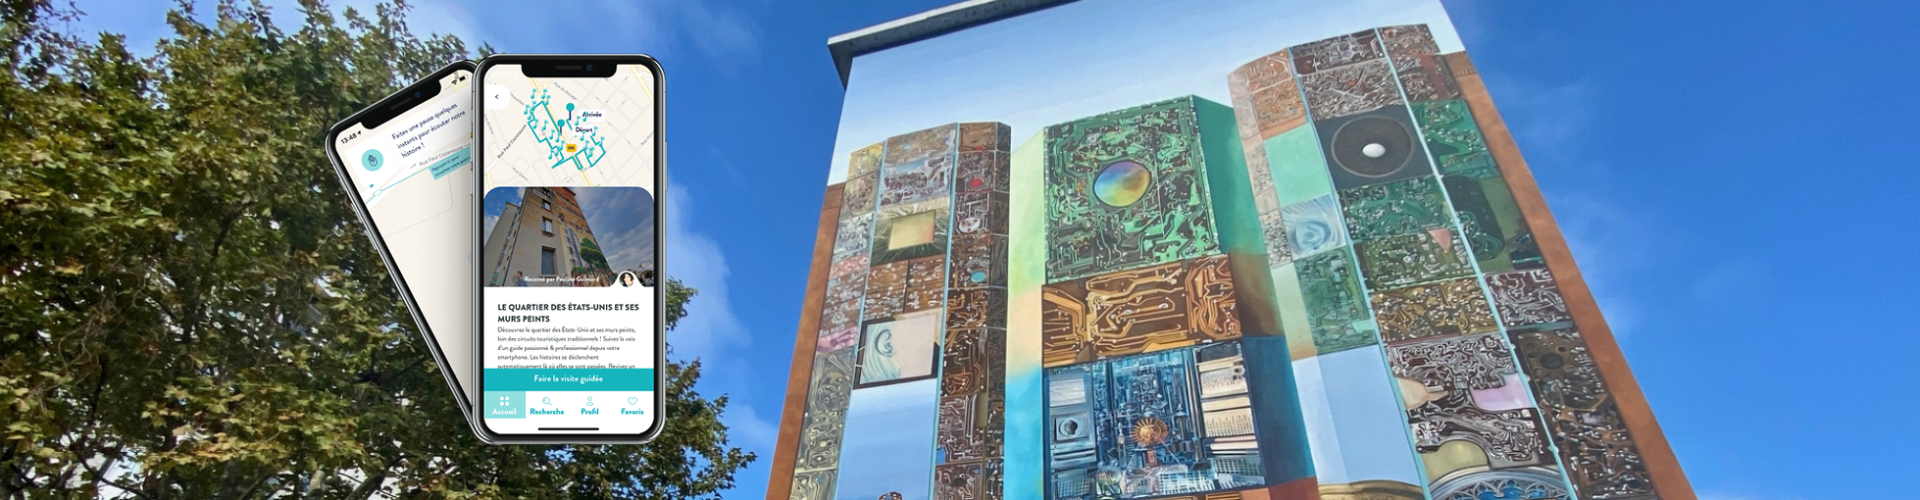 Visite audioguidée : Le Quartier des Etats-Unis et ses murs peints